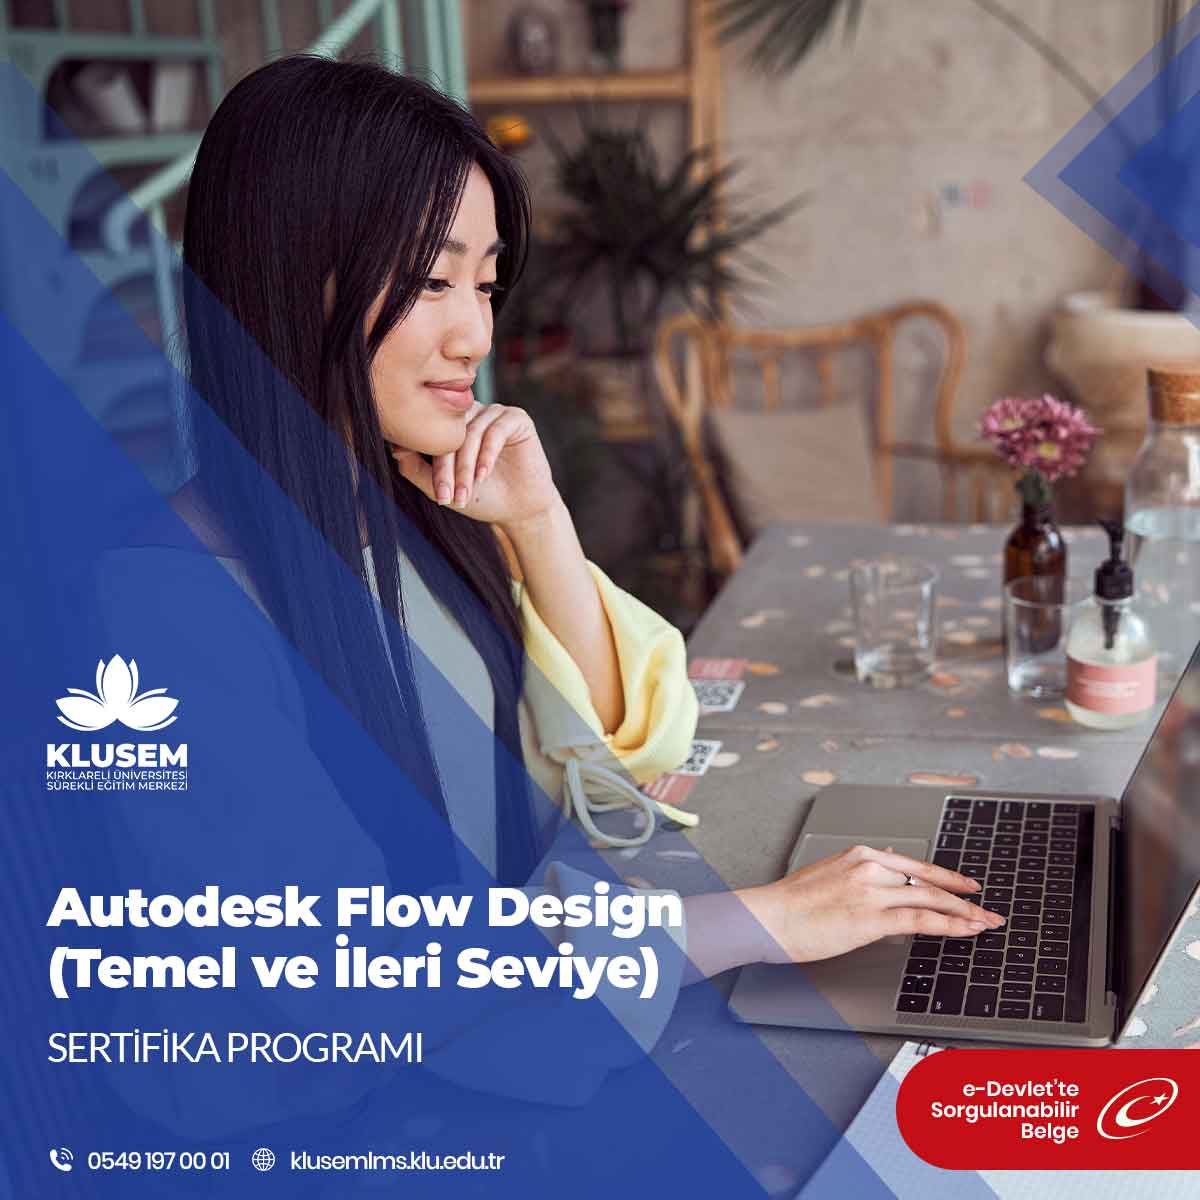 Autodesk Flow Design, Autodesk tarafından geliştirilen bir simülasyon yazılımıdır. 